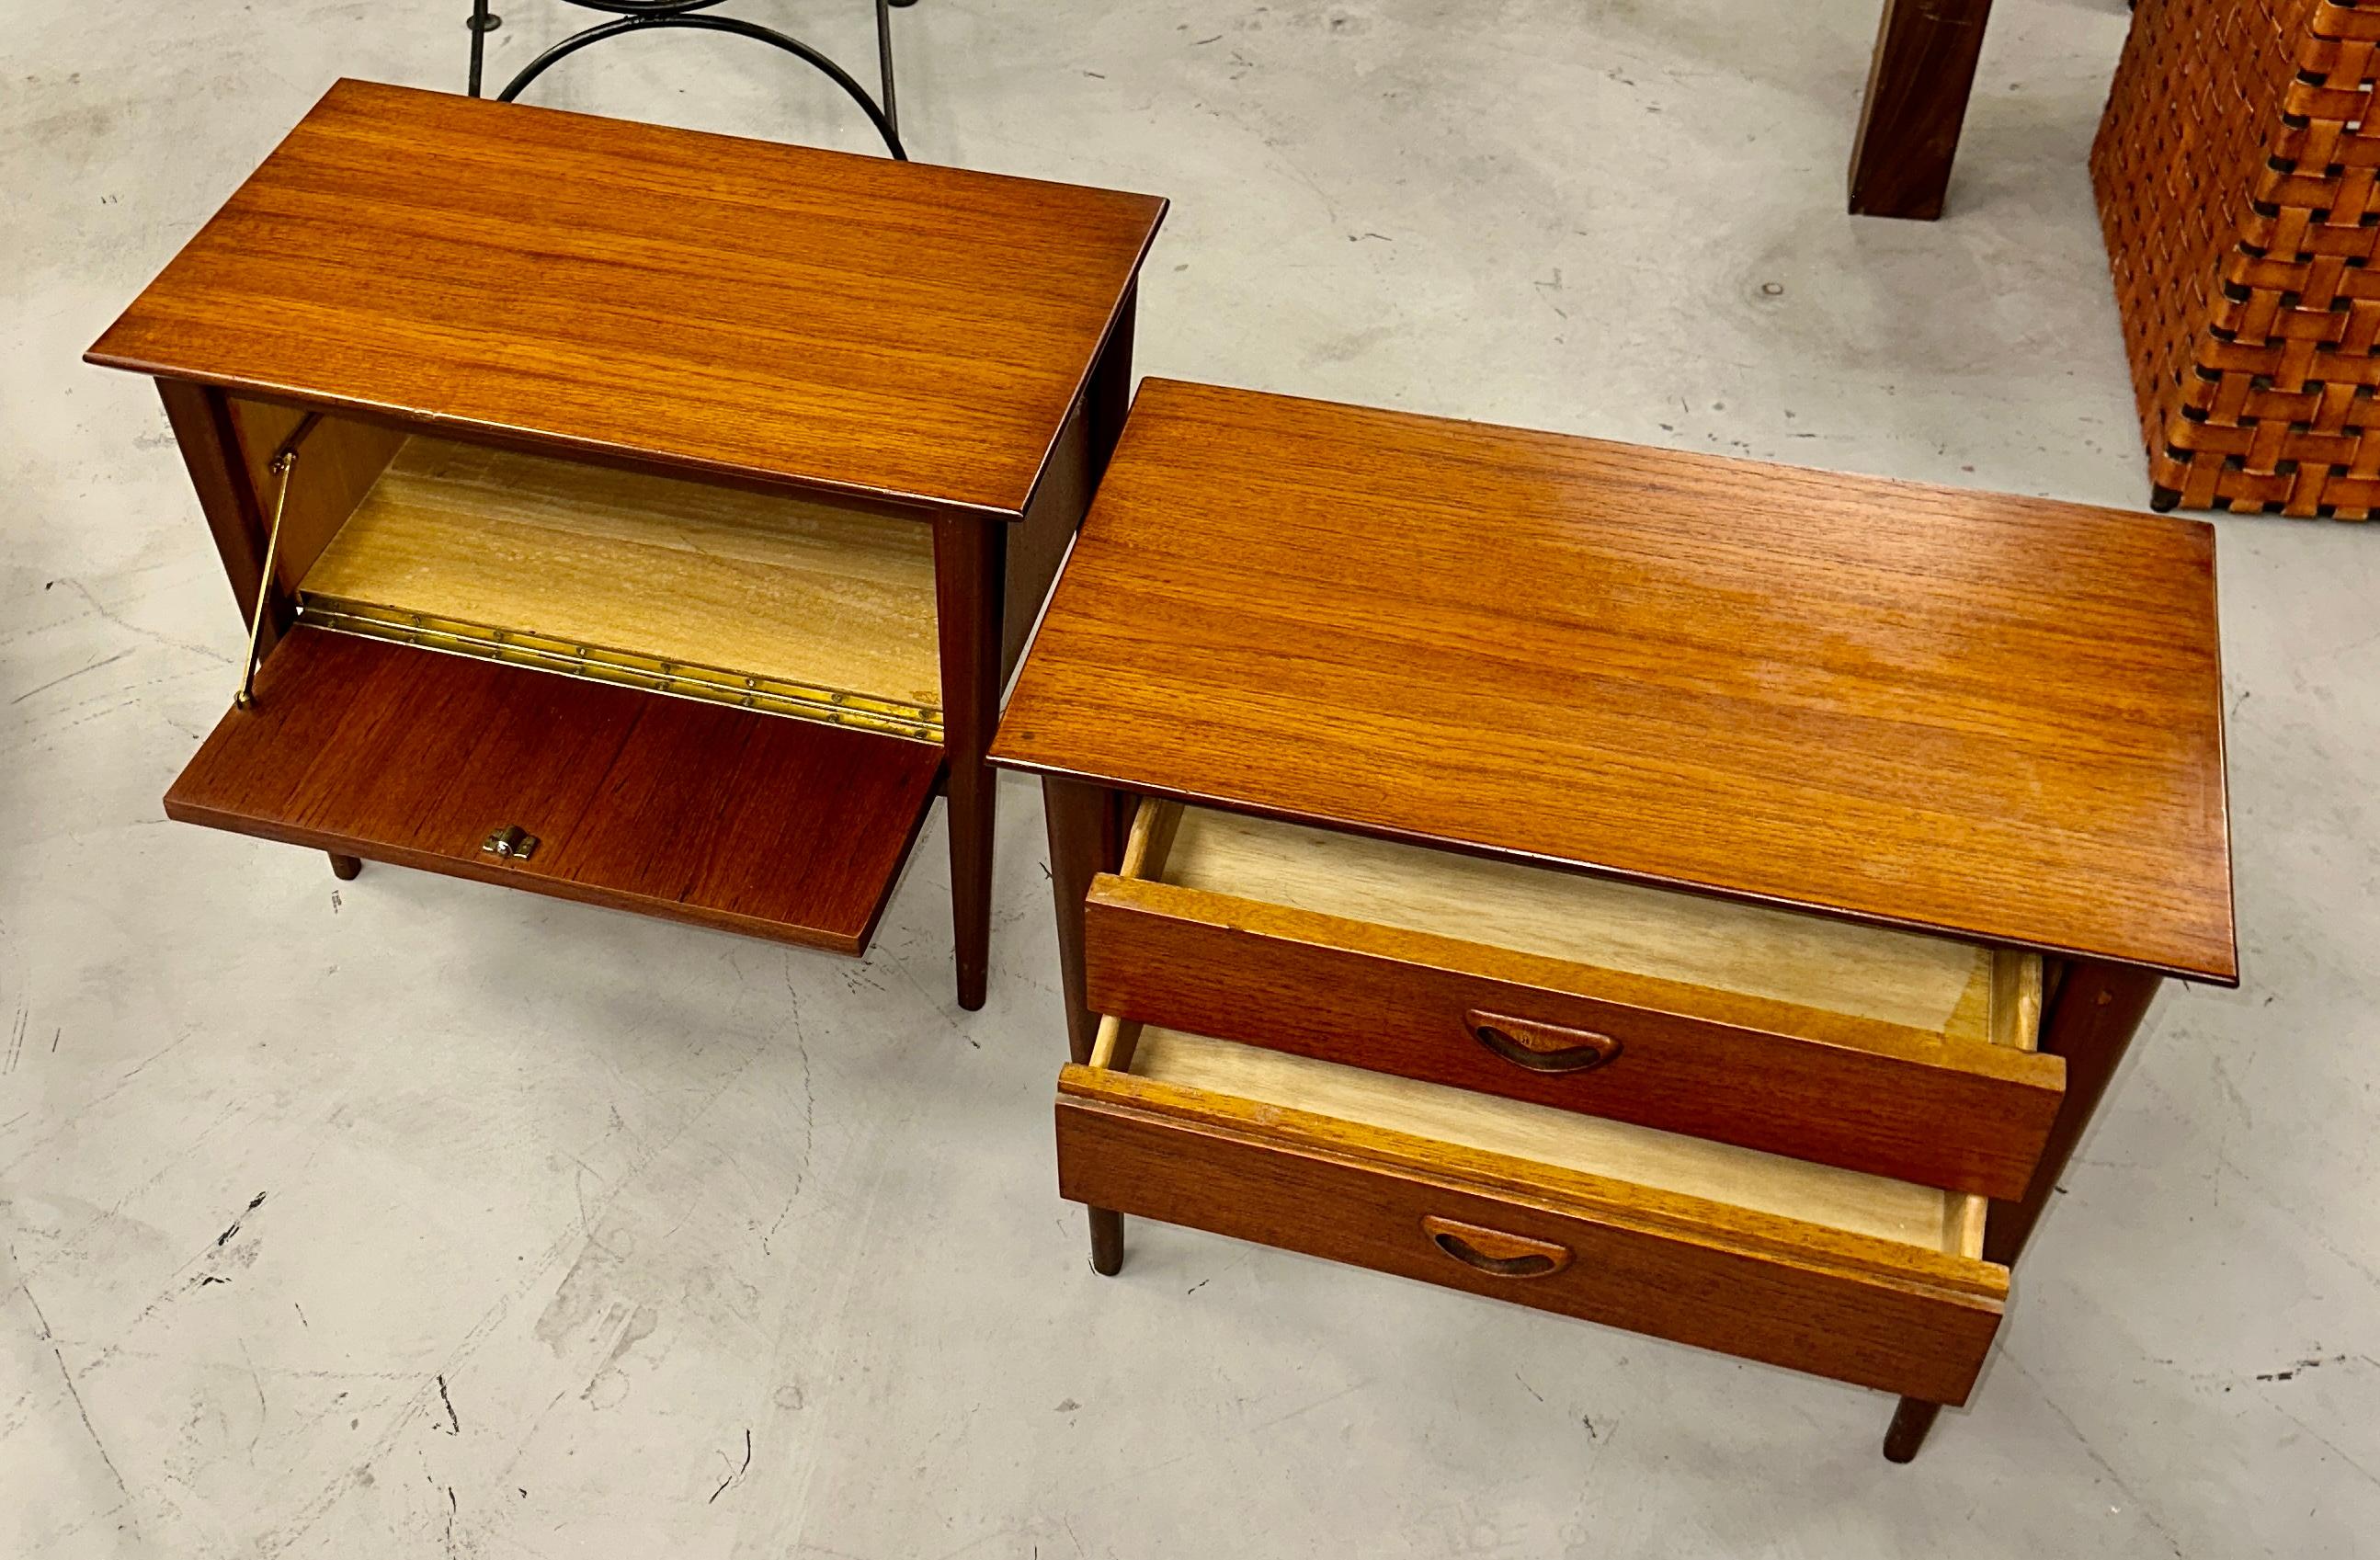 Pair of Louis Van Teeffelen Teak SIde Tables Nightstands For Sale 1